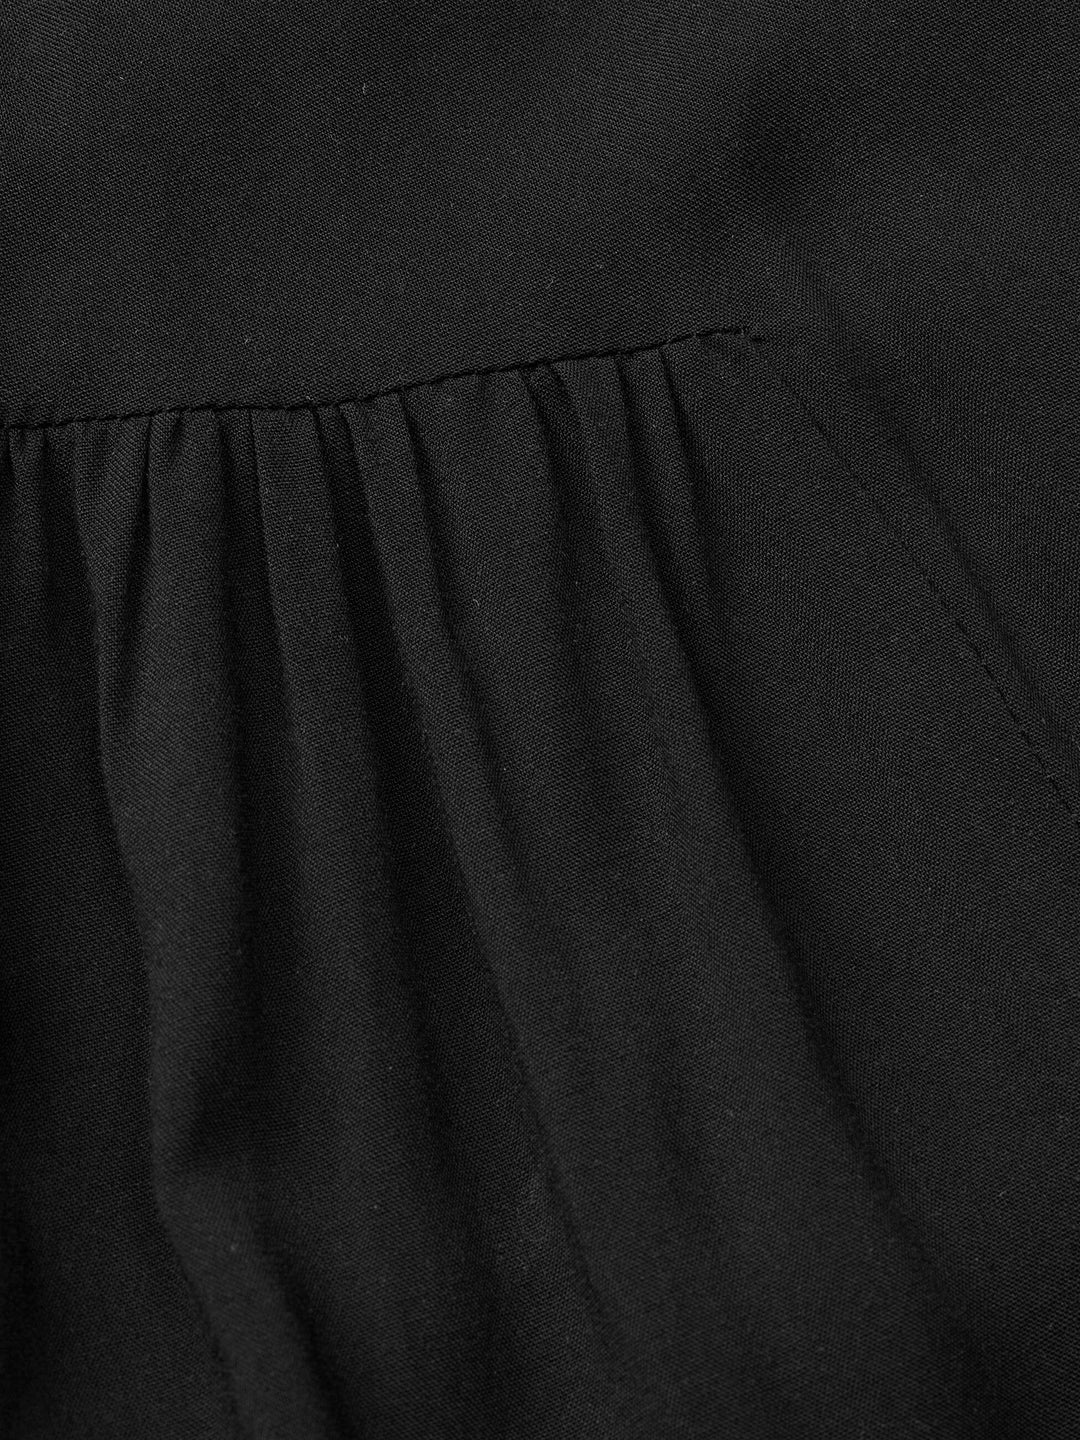 Forudbestilling - Lollys Laundry - Neell Maxi Dress Ls - 99 Black Kjoler 